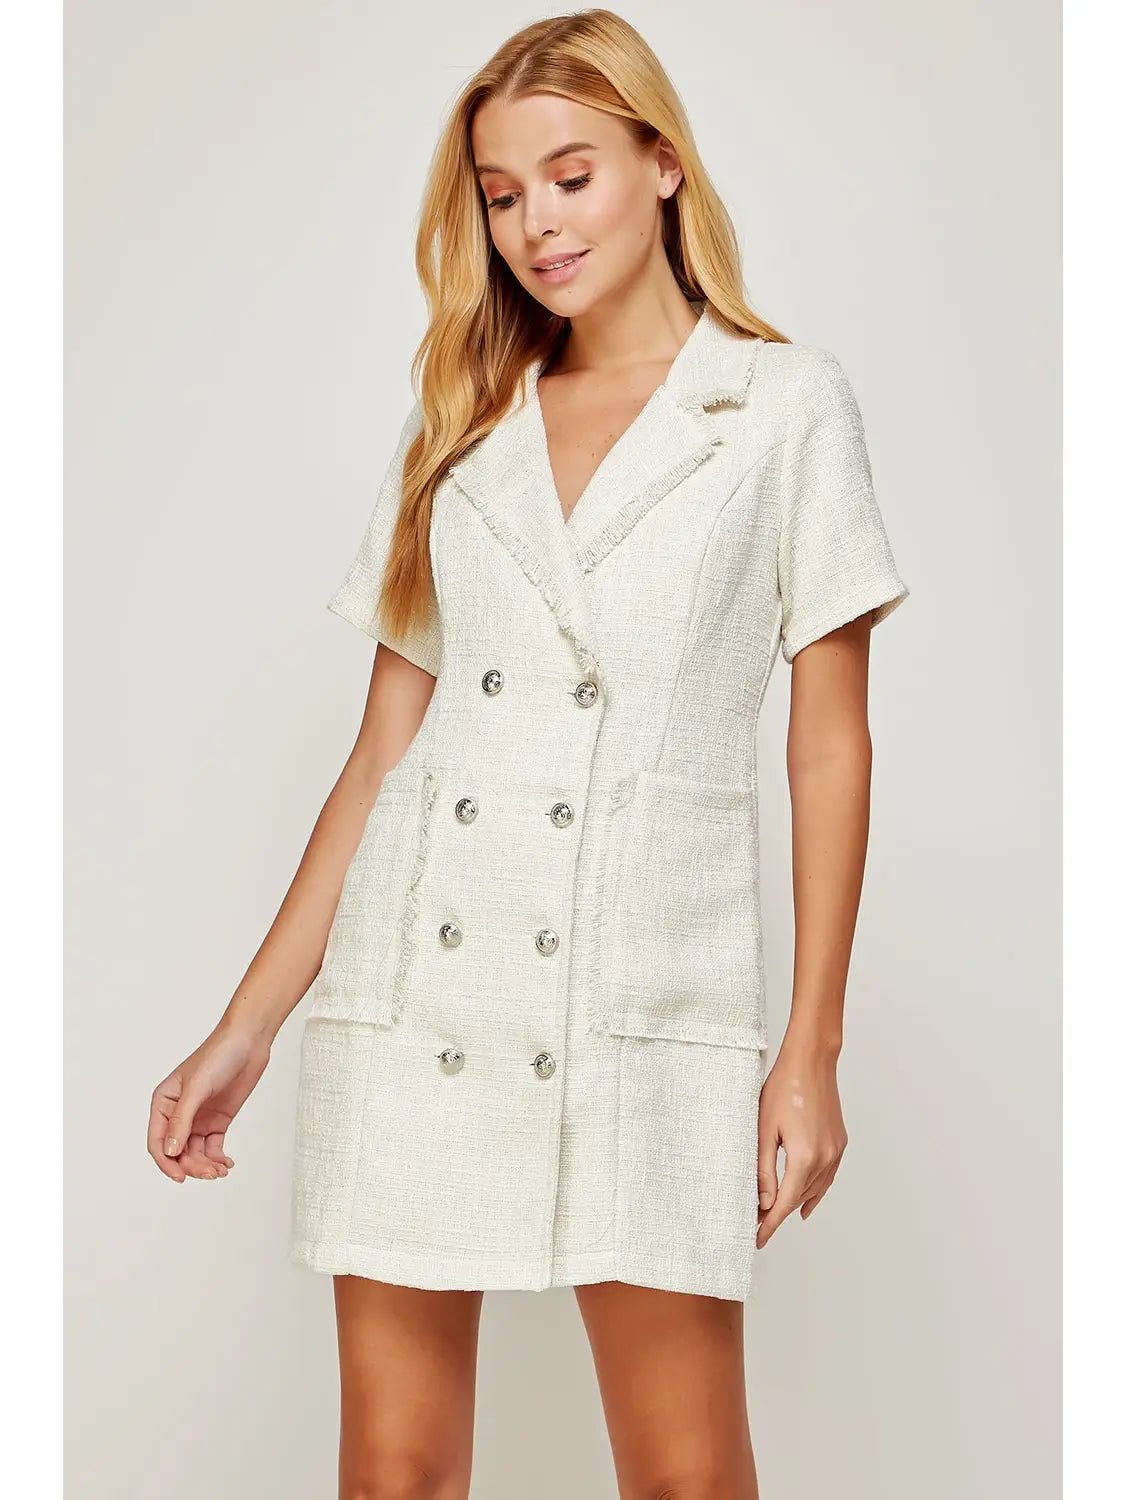 White Short Sleeve Tweed Jacket Mini Dress